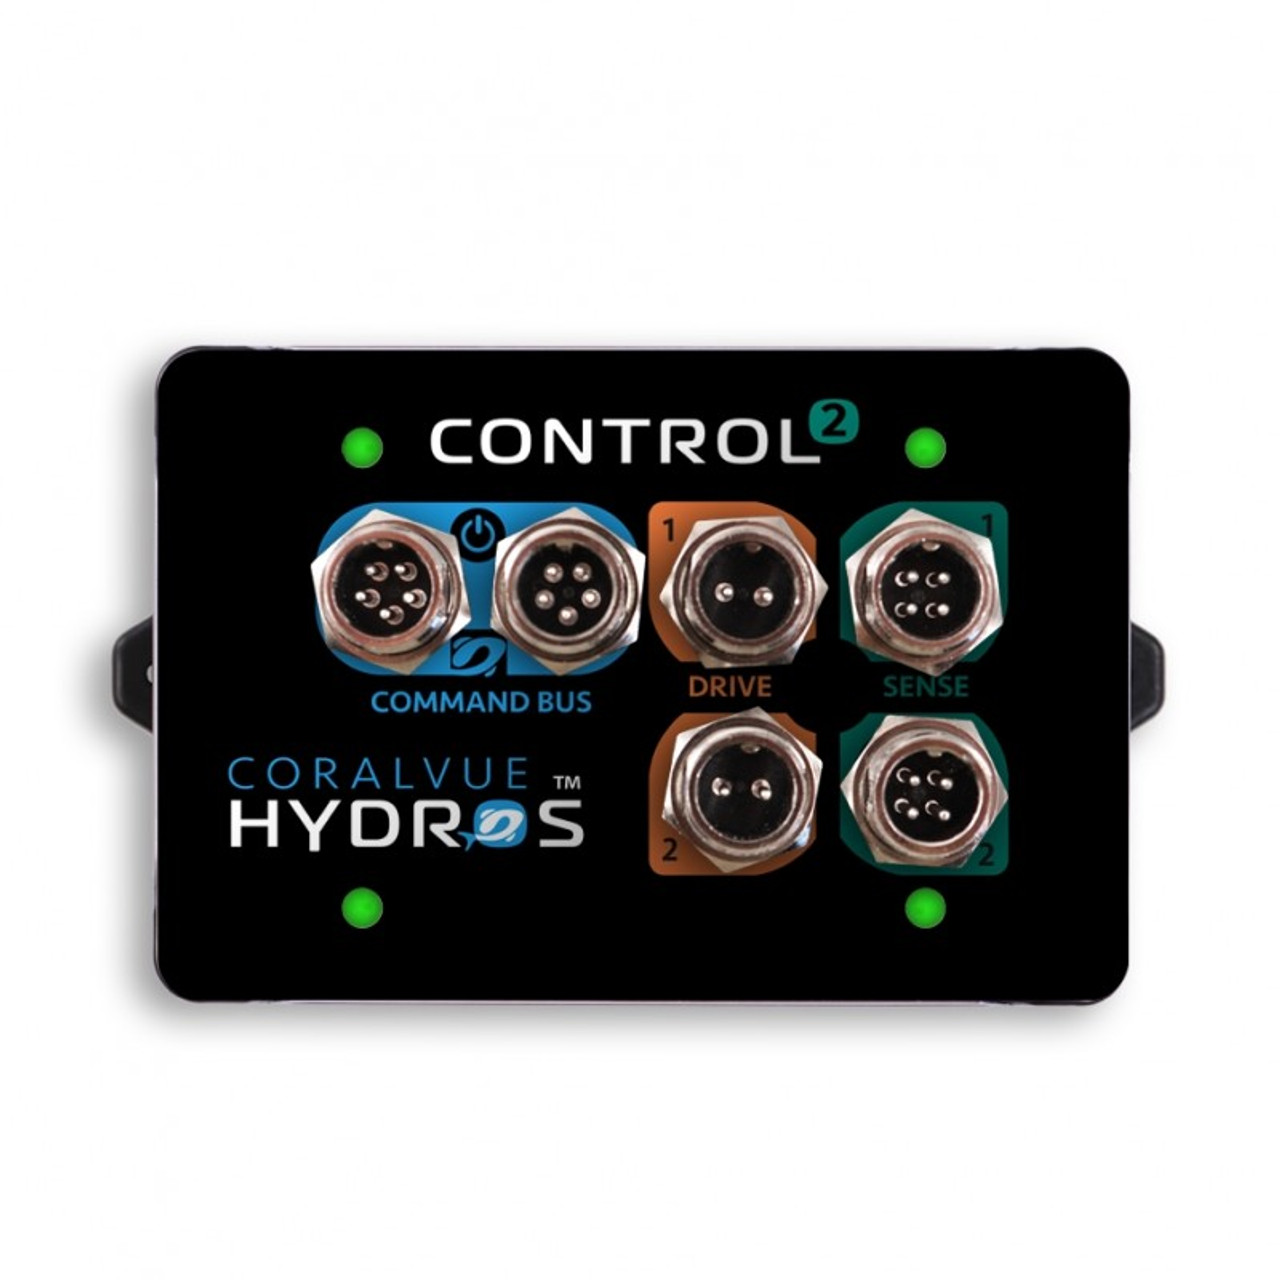 hydros control 2